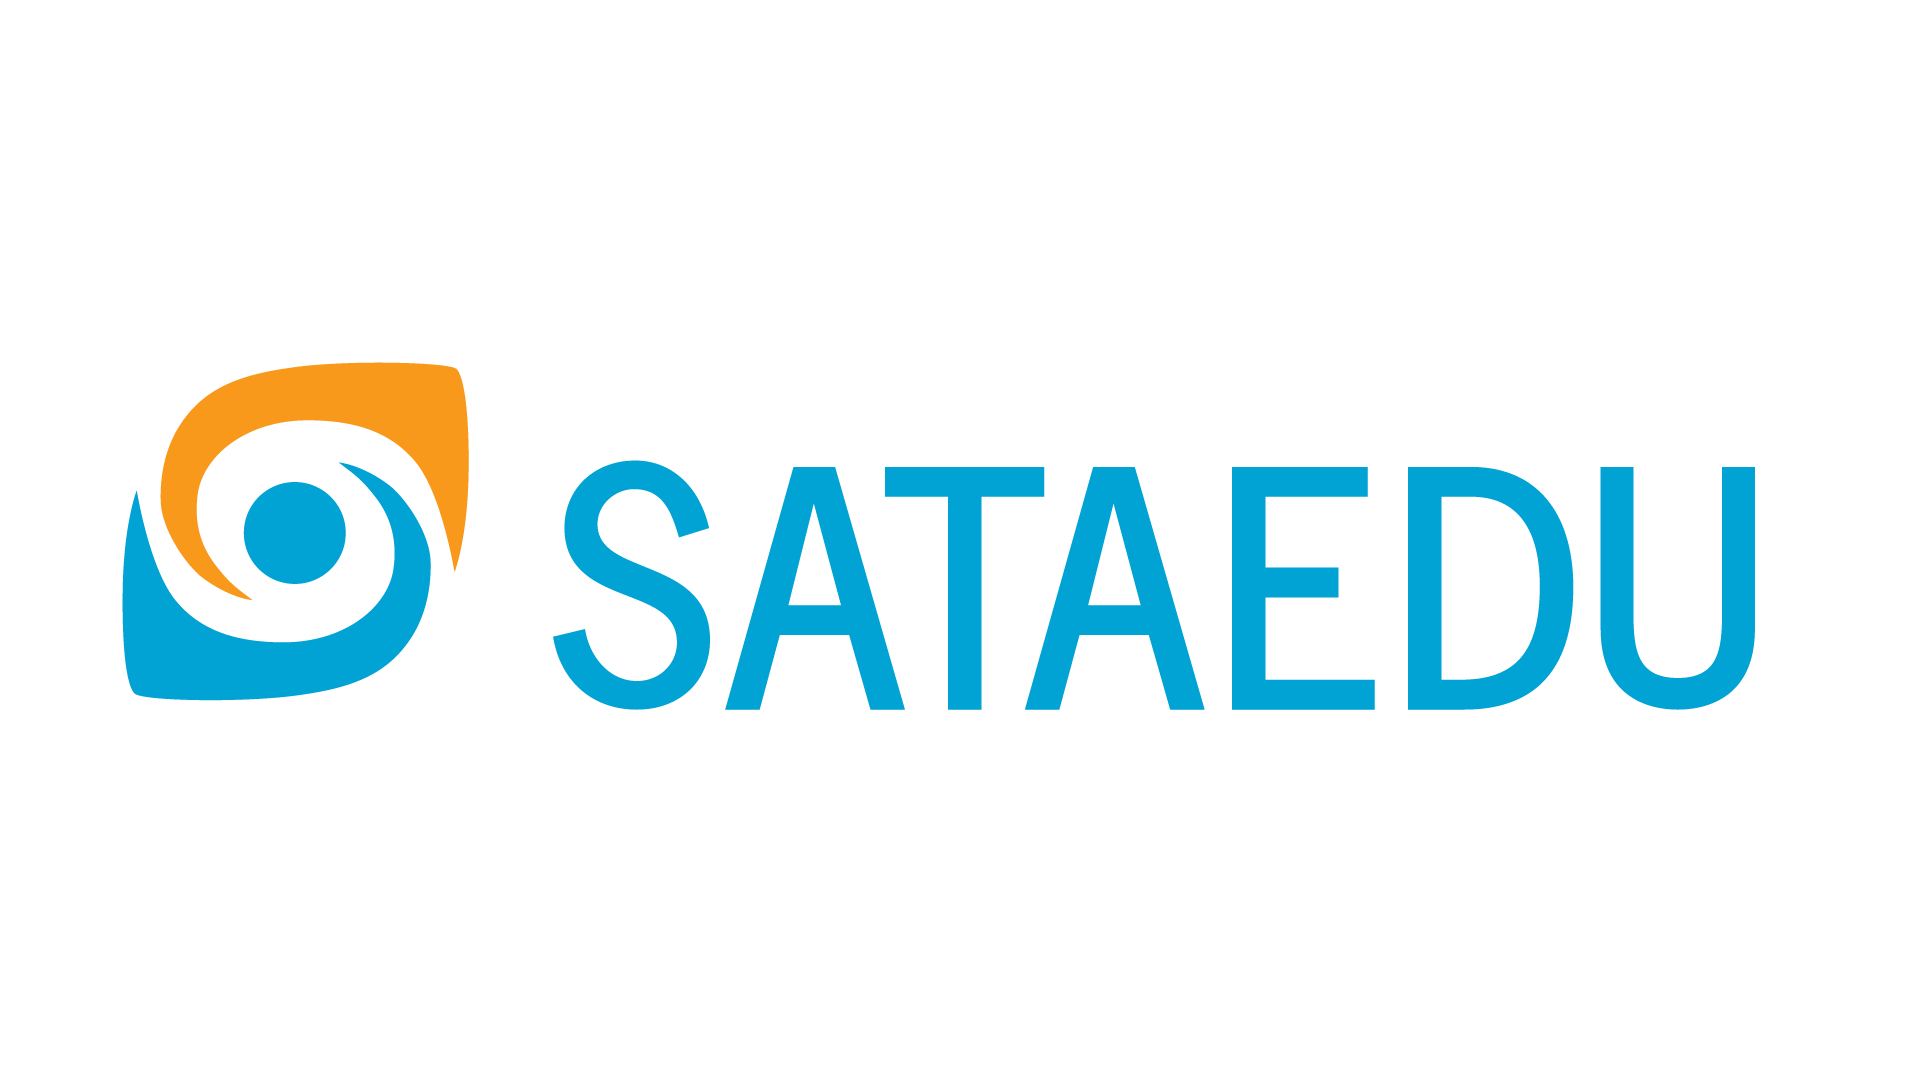 Sataedu